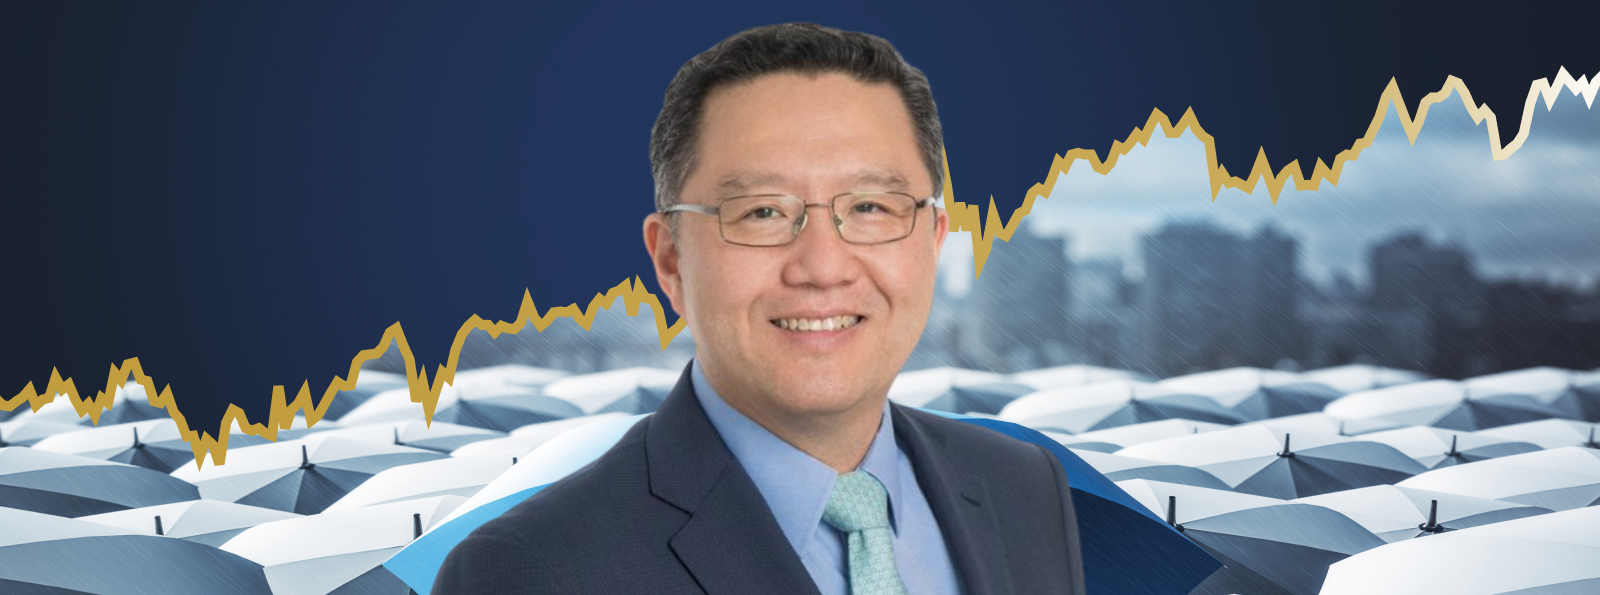 Jason Kim, Tyndall Asset Management